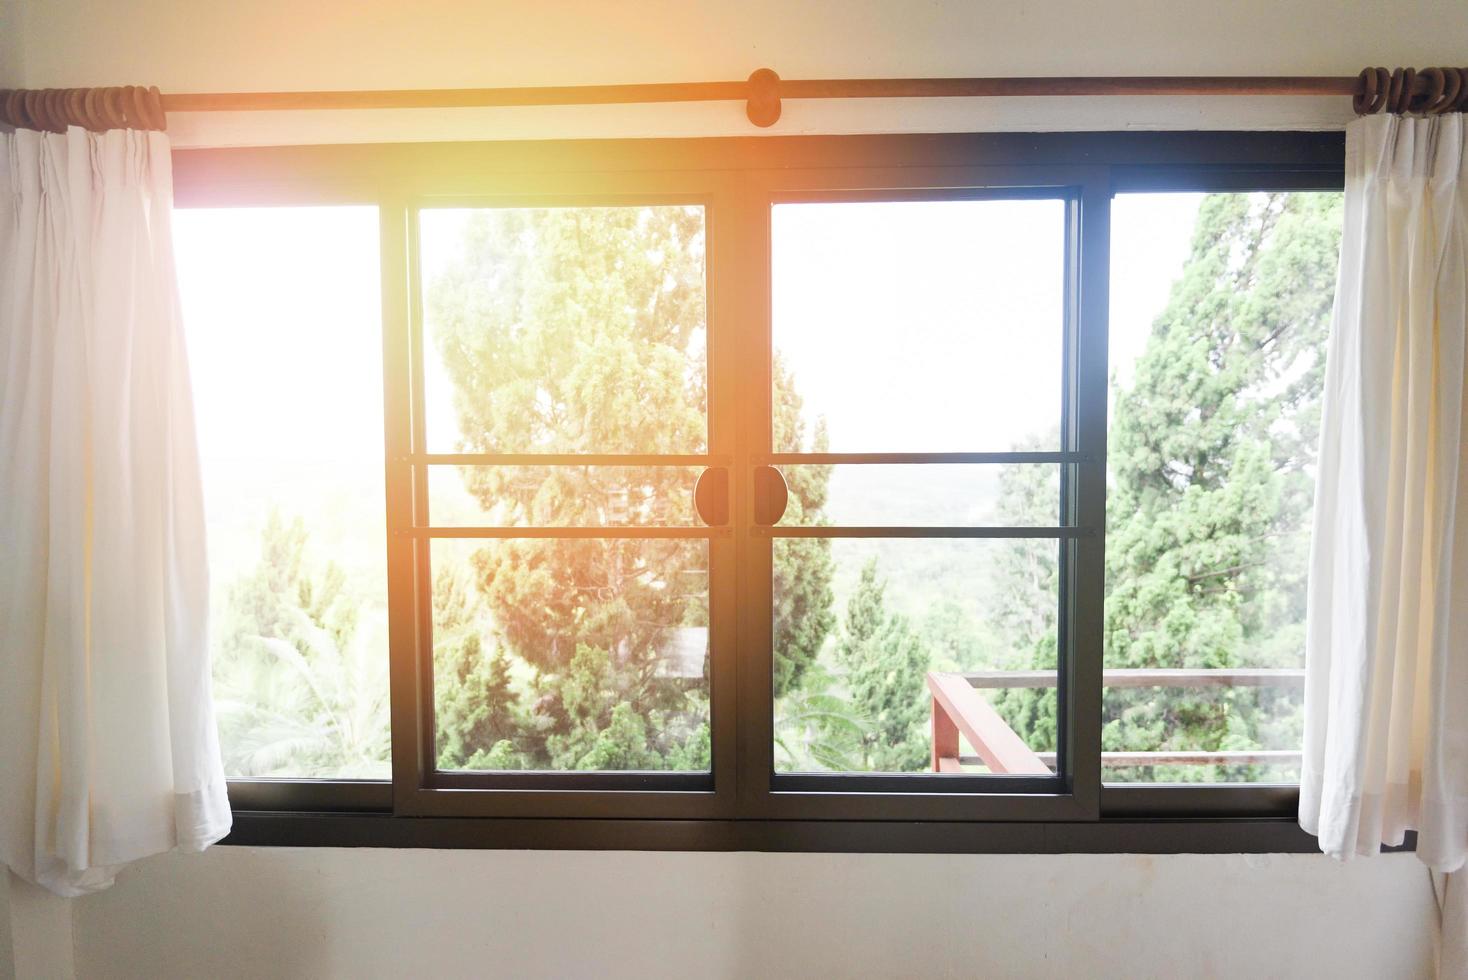 sovrumsfönster på morgonen - solljus genom i rummet öppna gardiner med balkong och naturträd på utanför fönstret foto